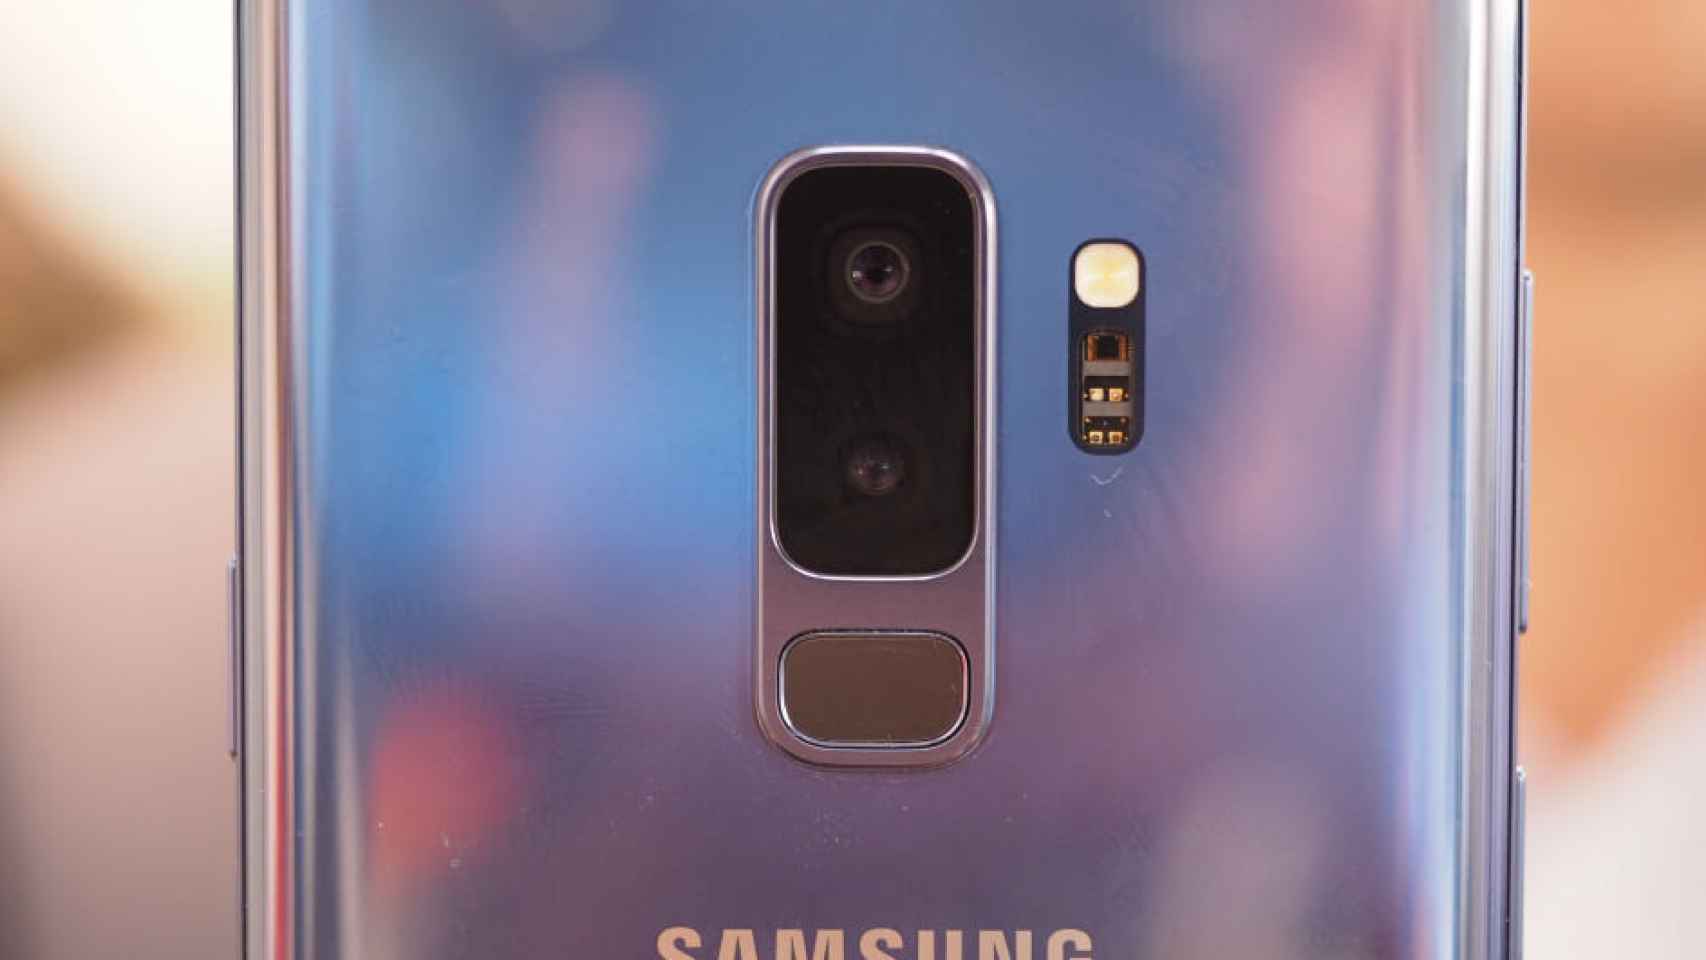 Los Samsung Galaxy S9 pueden medir la presión arterial sin accesorios